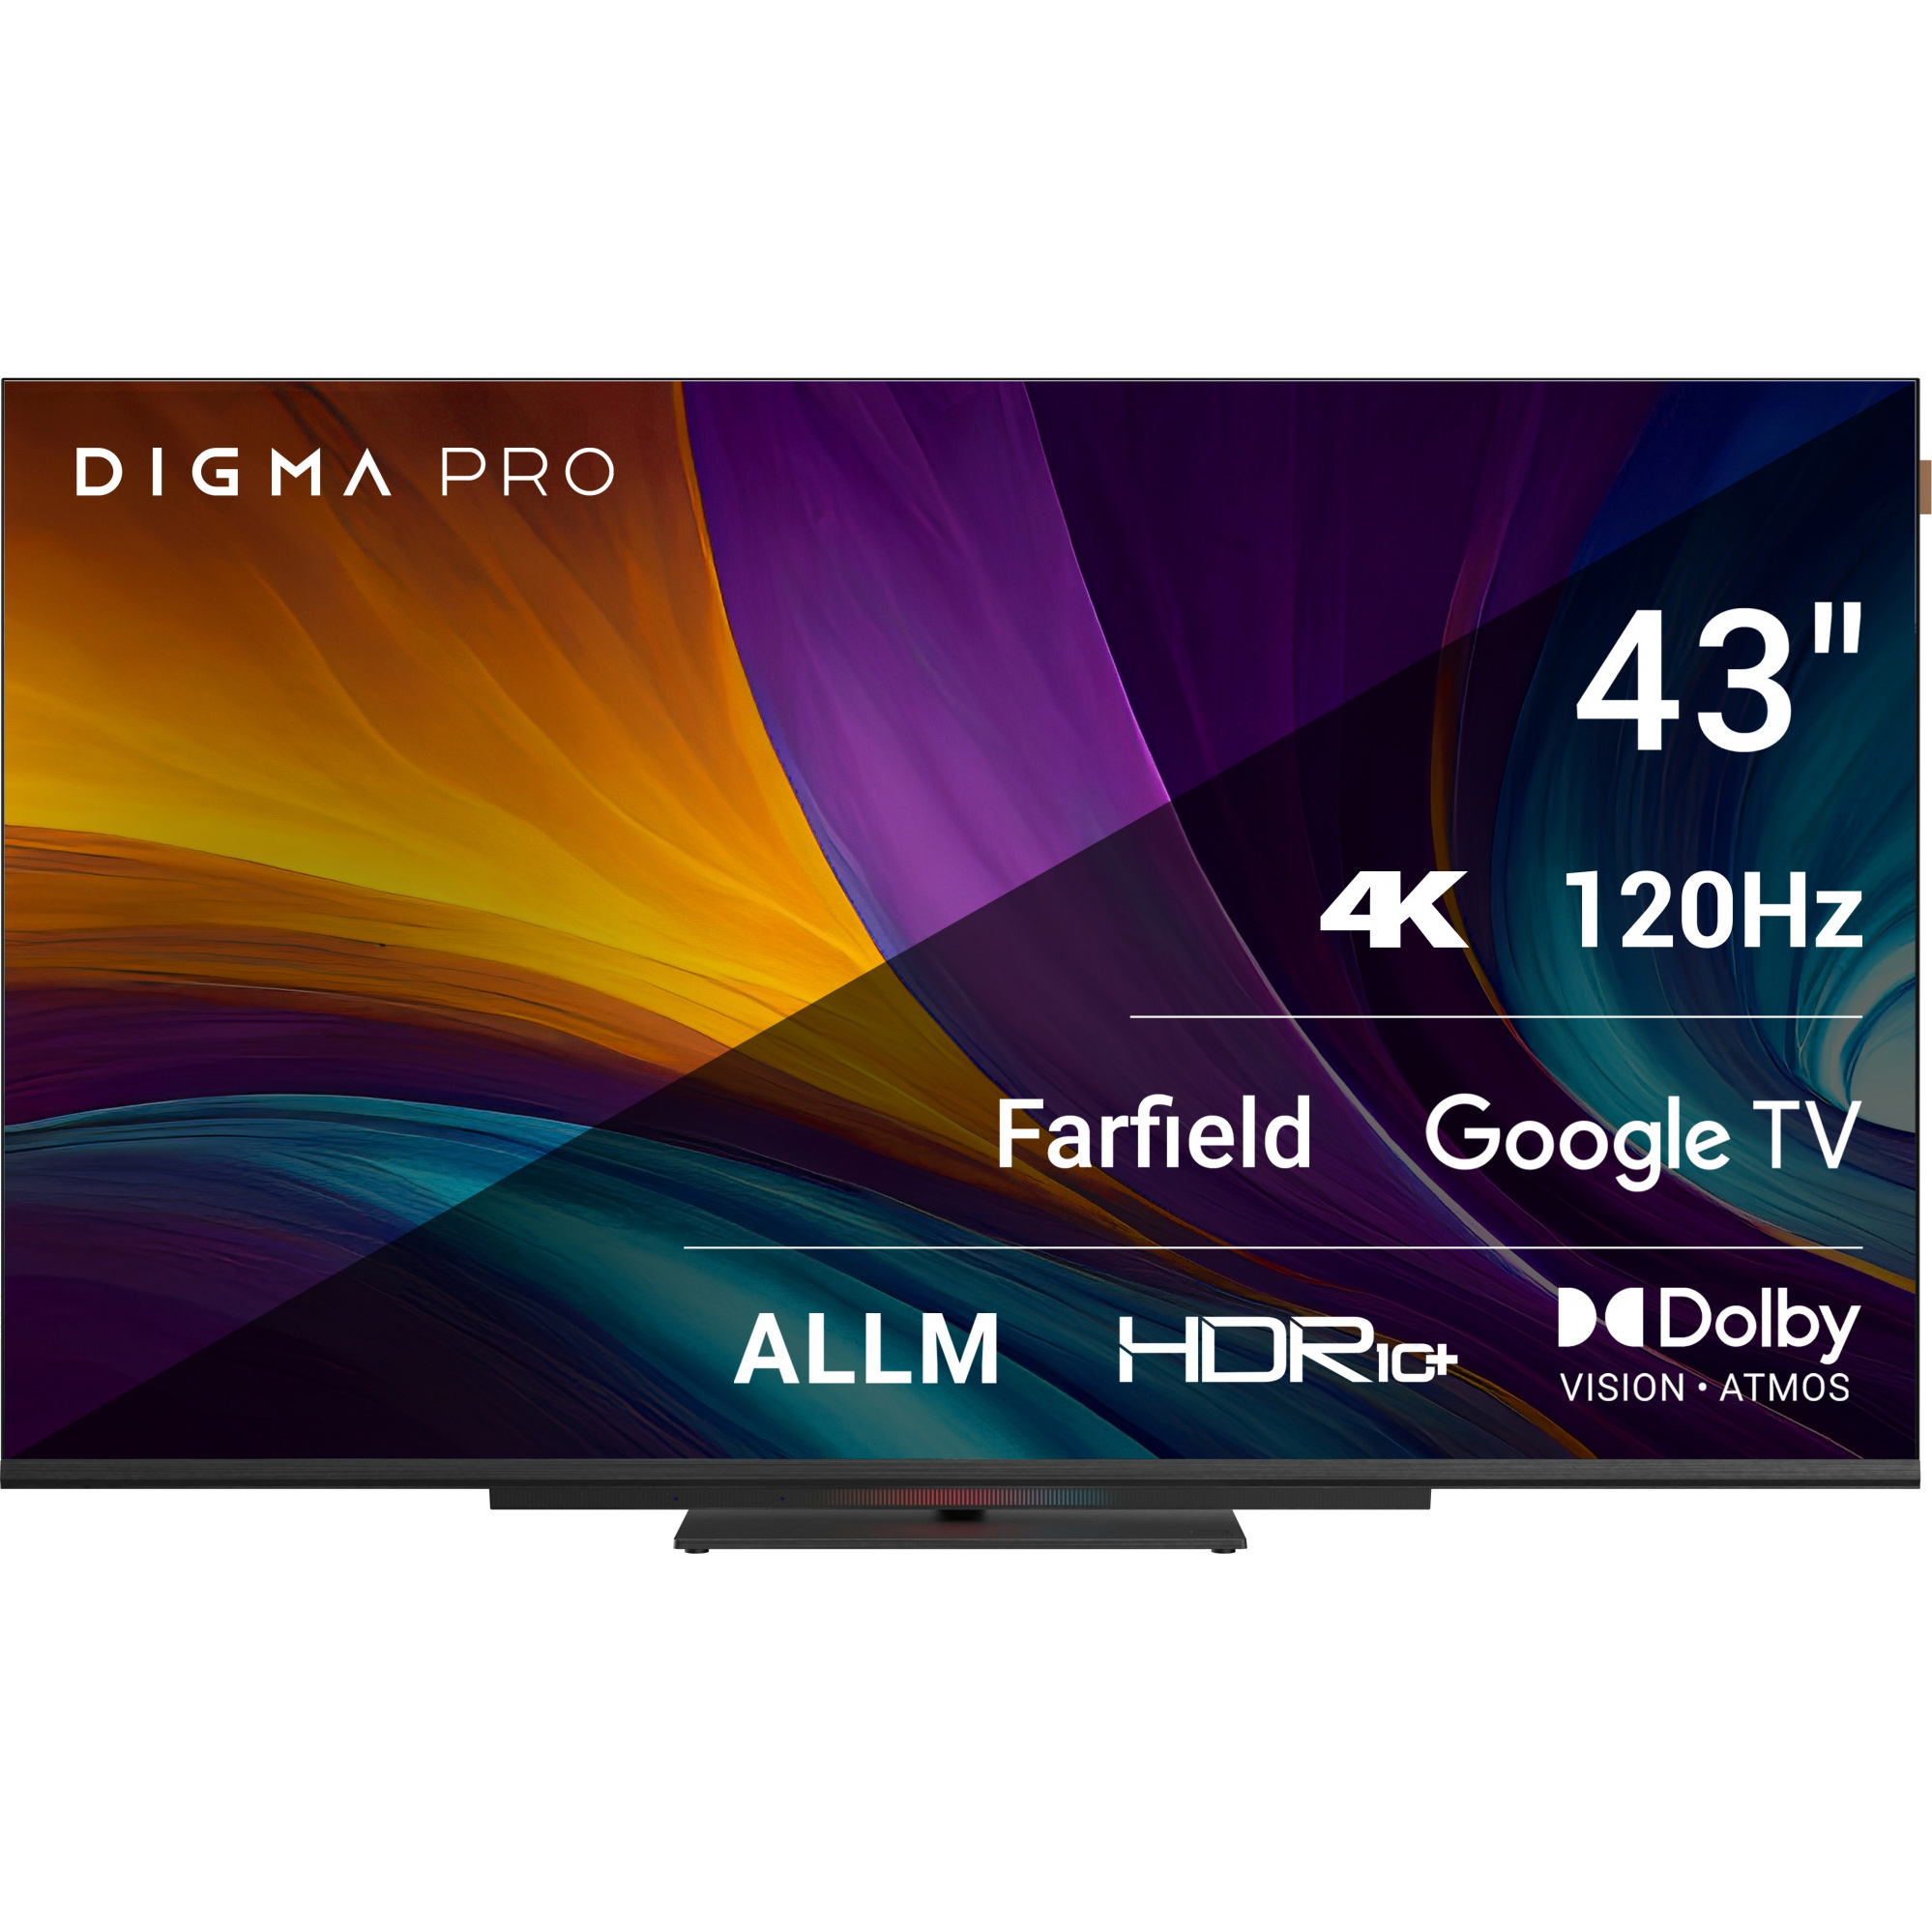 Телевизор Digma Pro 43 43C цена и фото